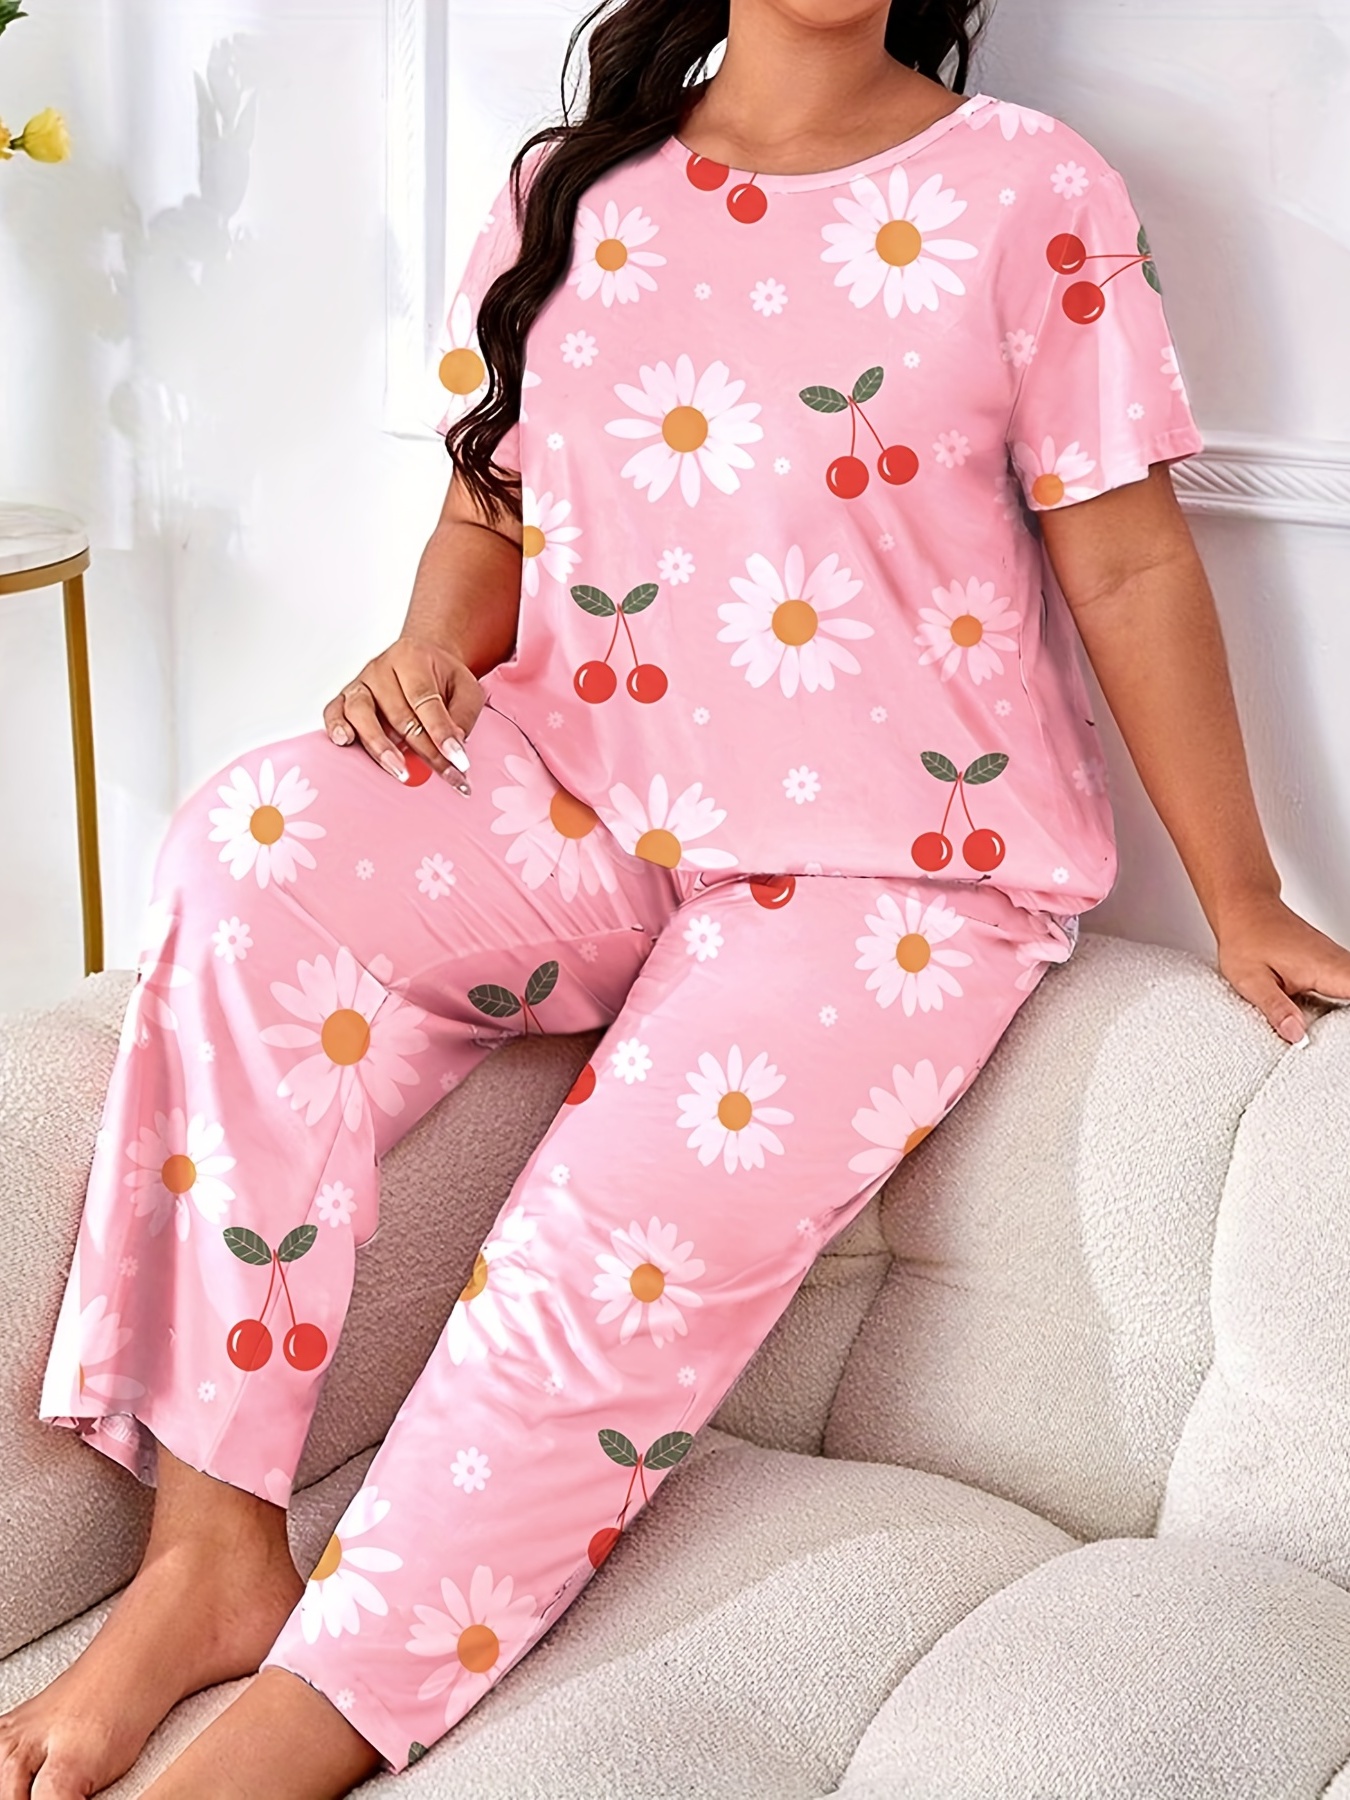 Cute Pajamas, Cute Pjs